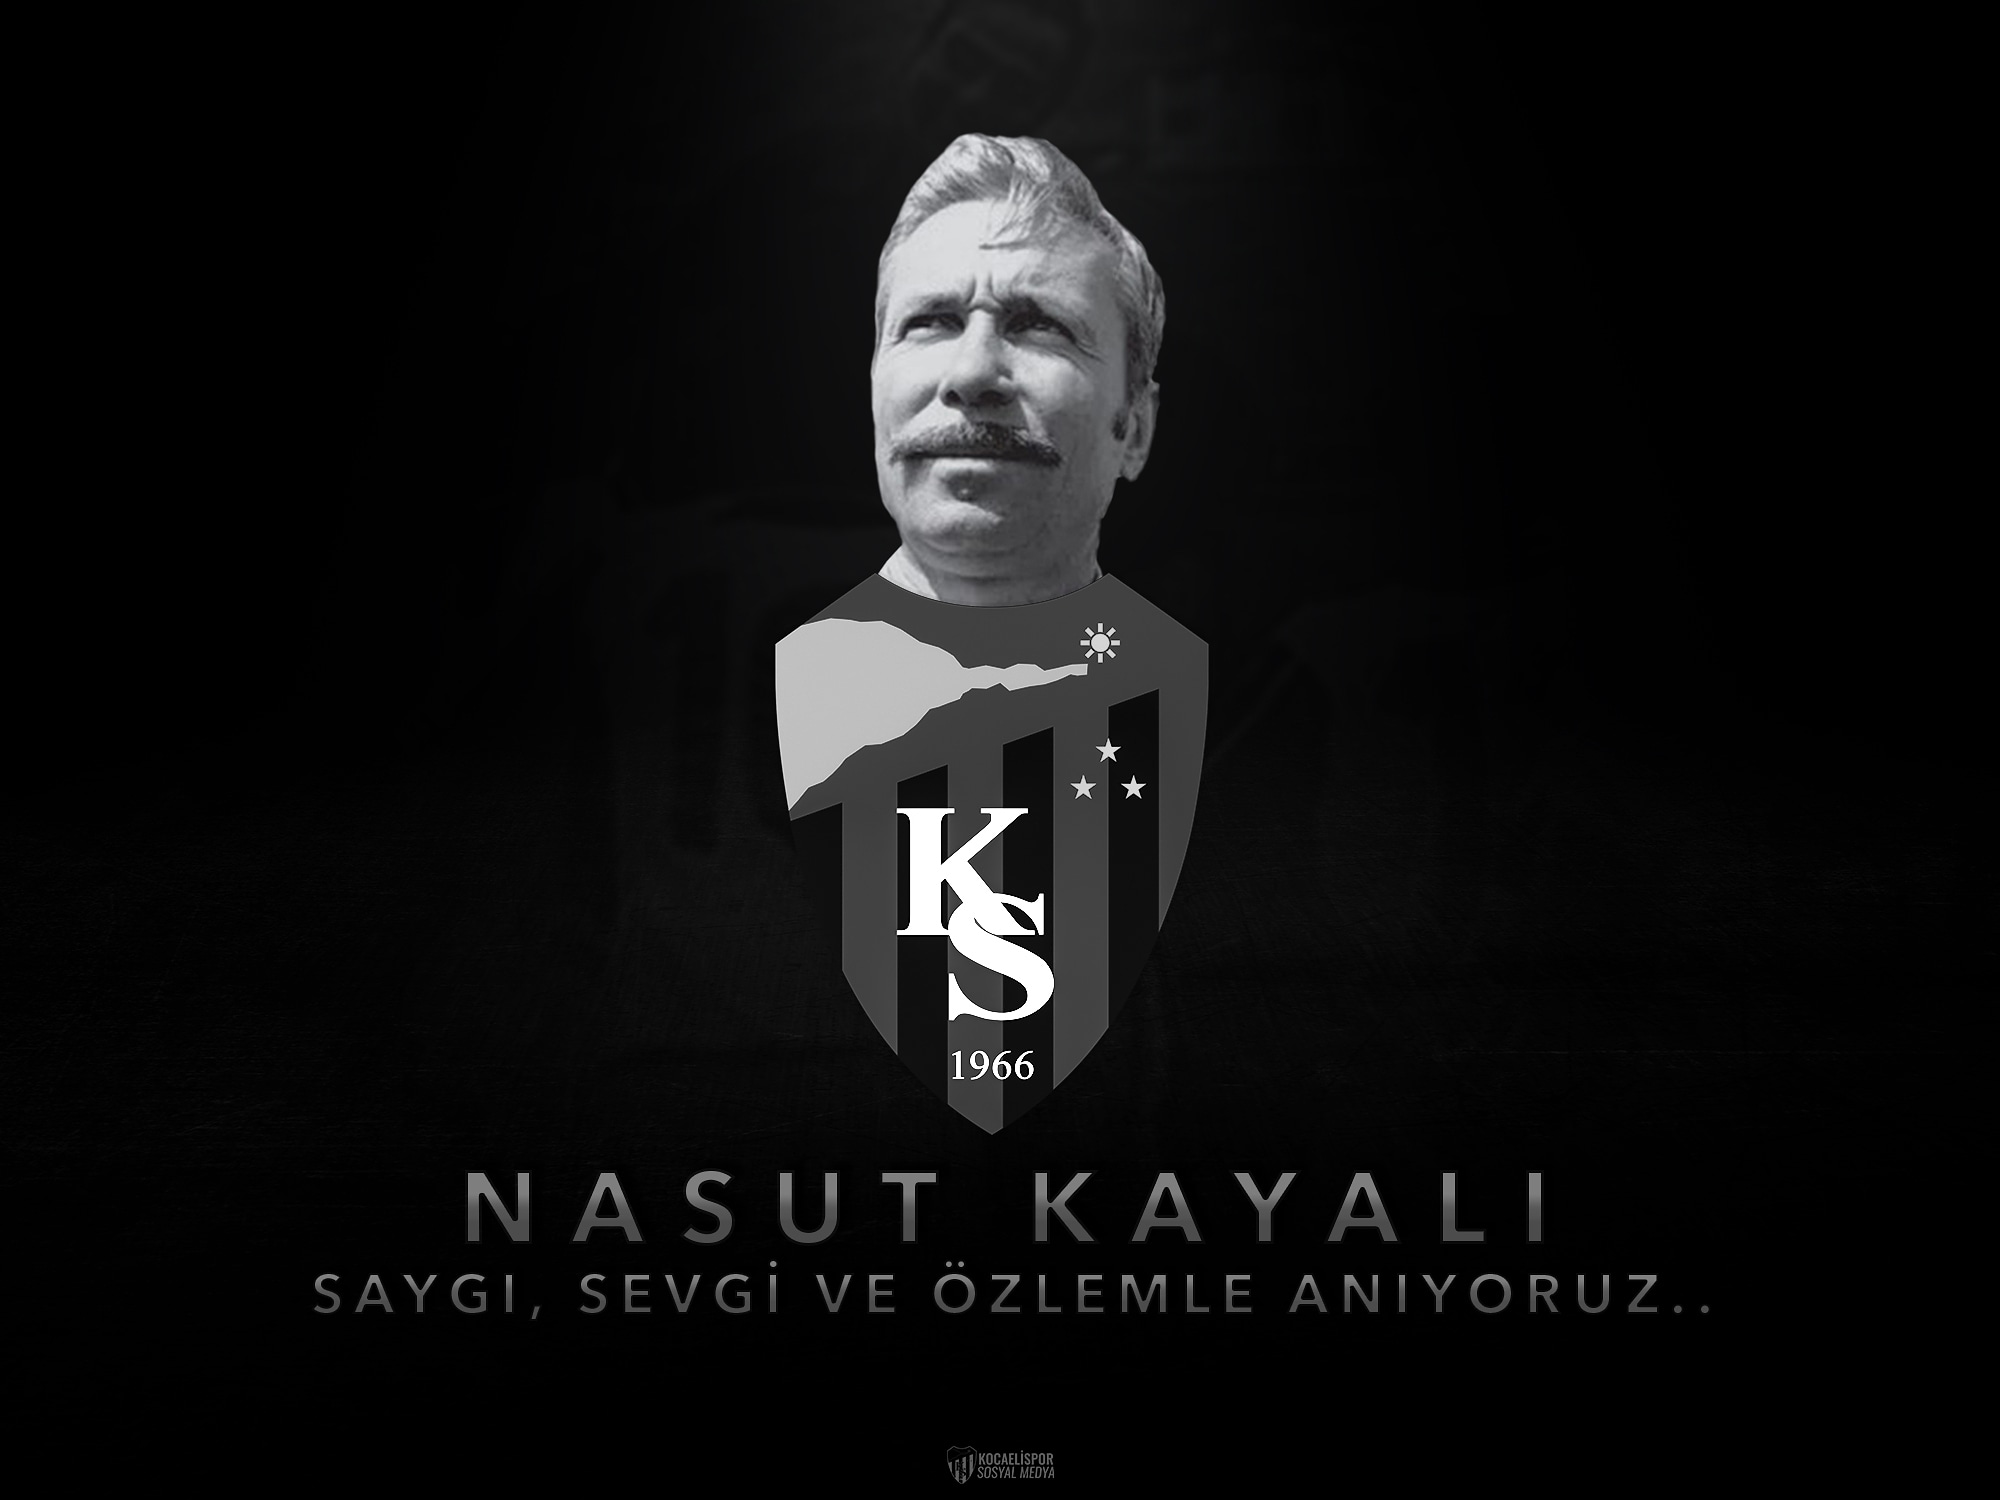 Nasut Kayalı'yı saygı, sevgi ve özlemle anıyoruz.